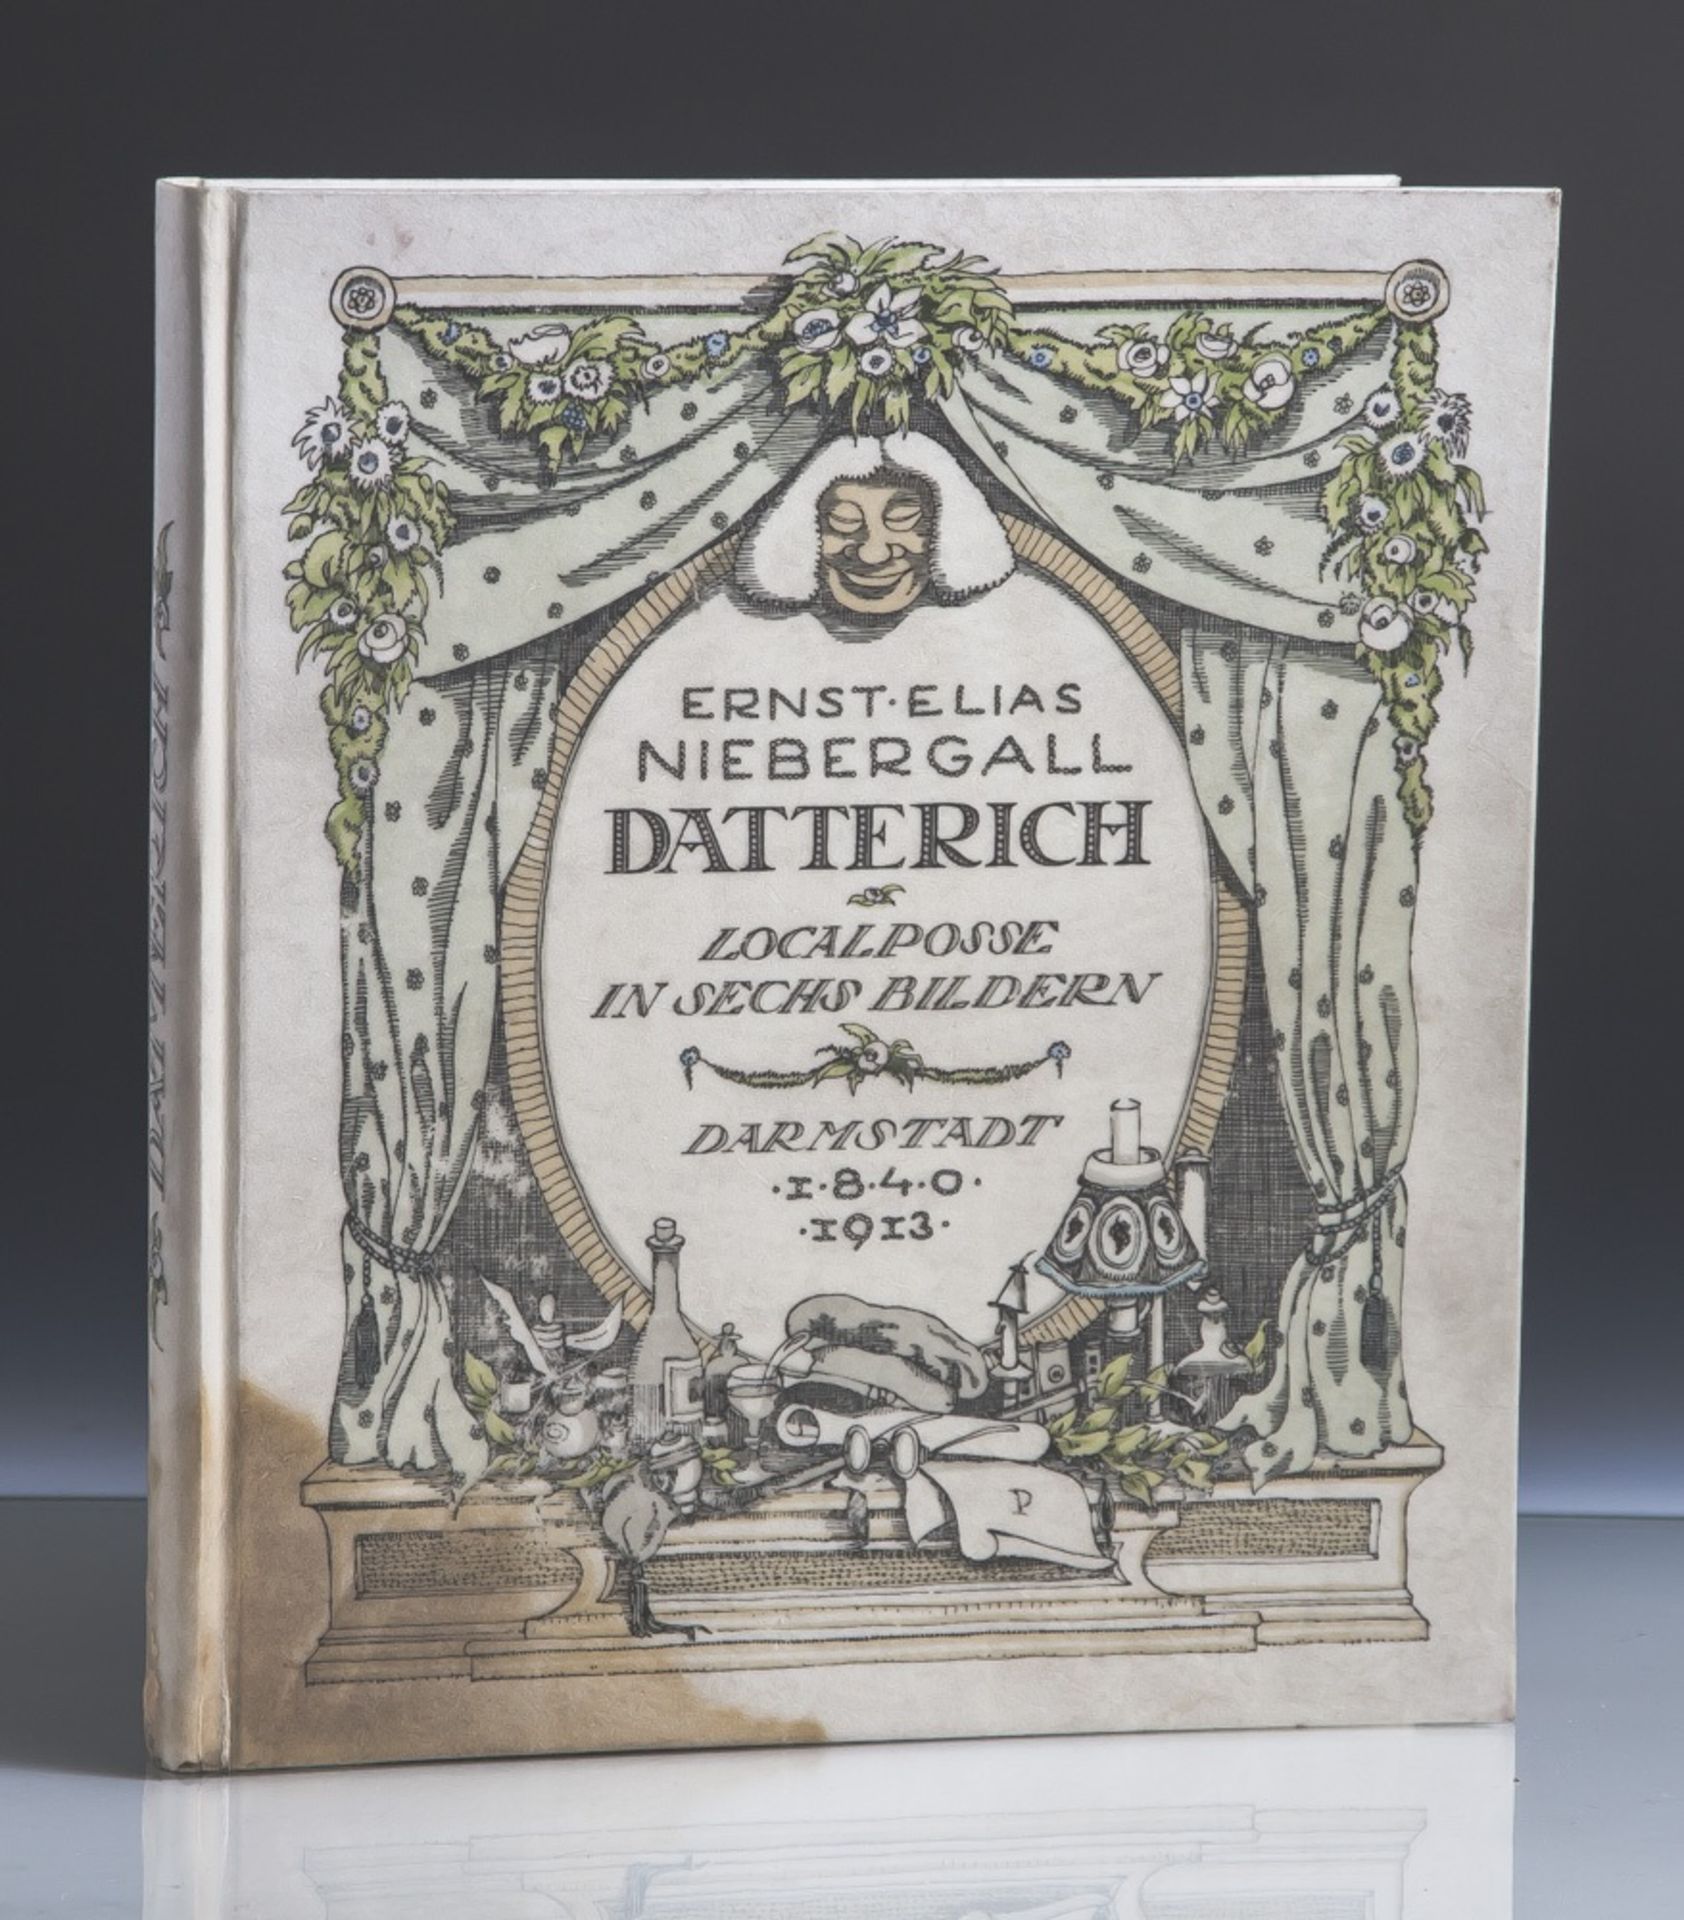 Niebergall, Ernst Elias "Datterich - Localposse in sechs Bildern in der Mundart der Darmstädter"